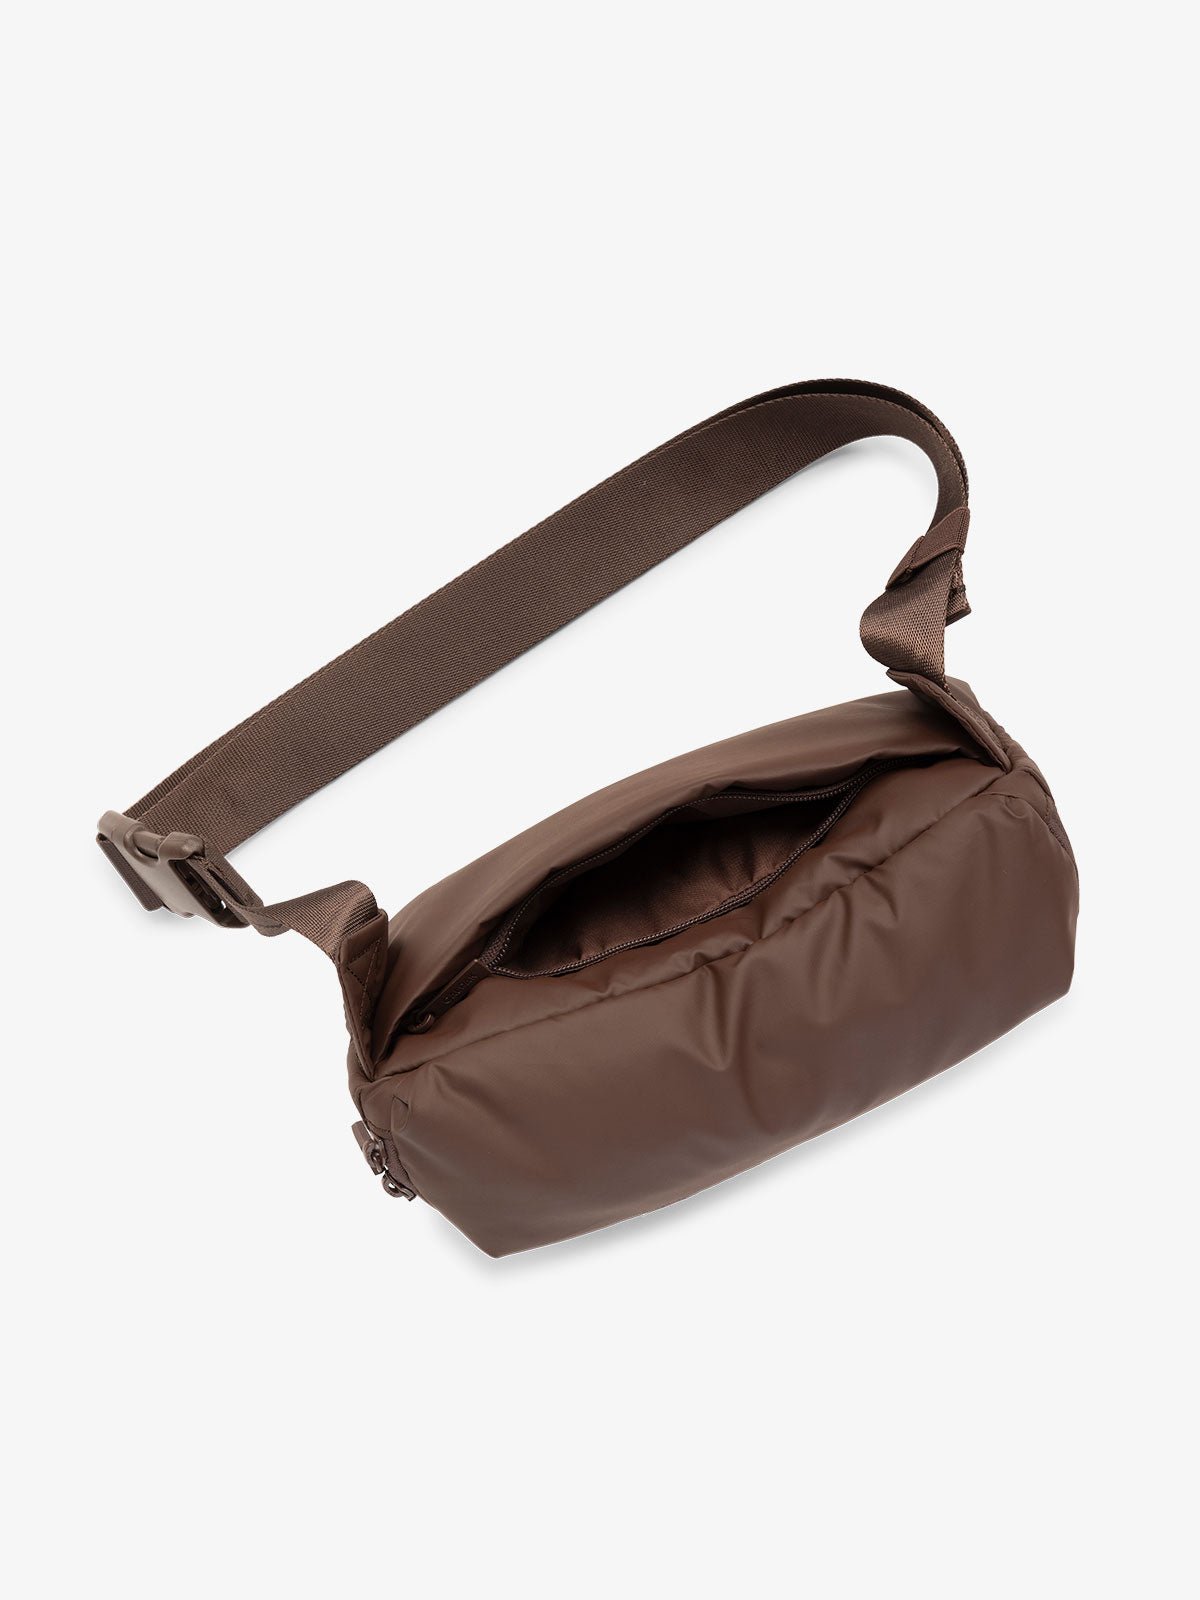 CALPAK Luka Belt Bag with adjustable strap and hidden back pocket in dark brown